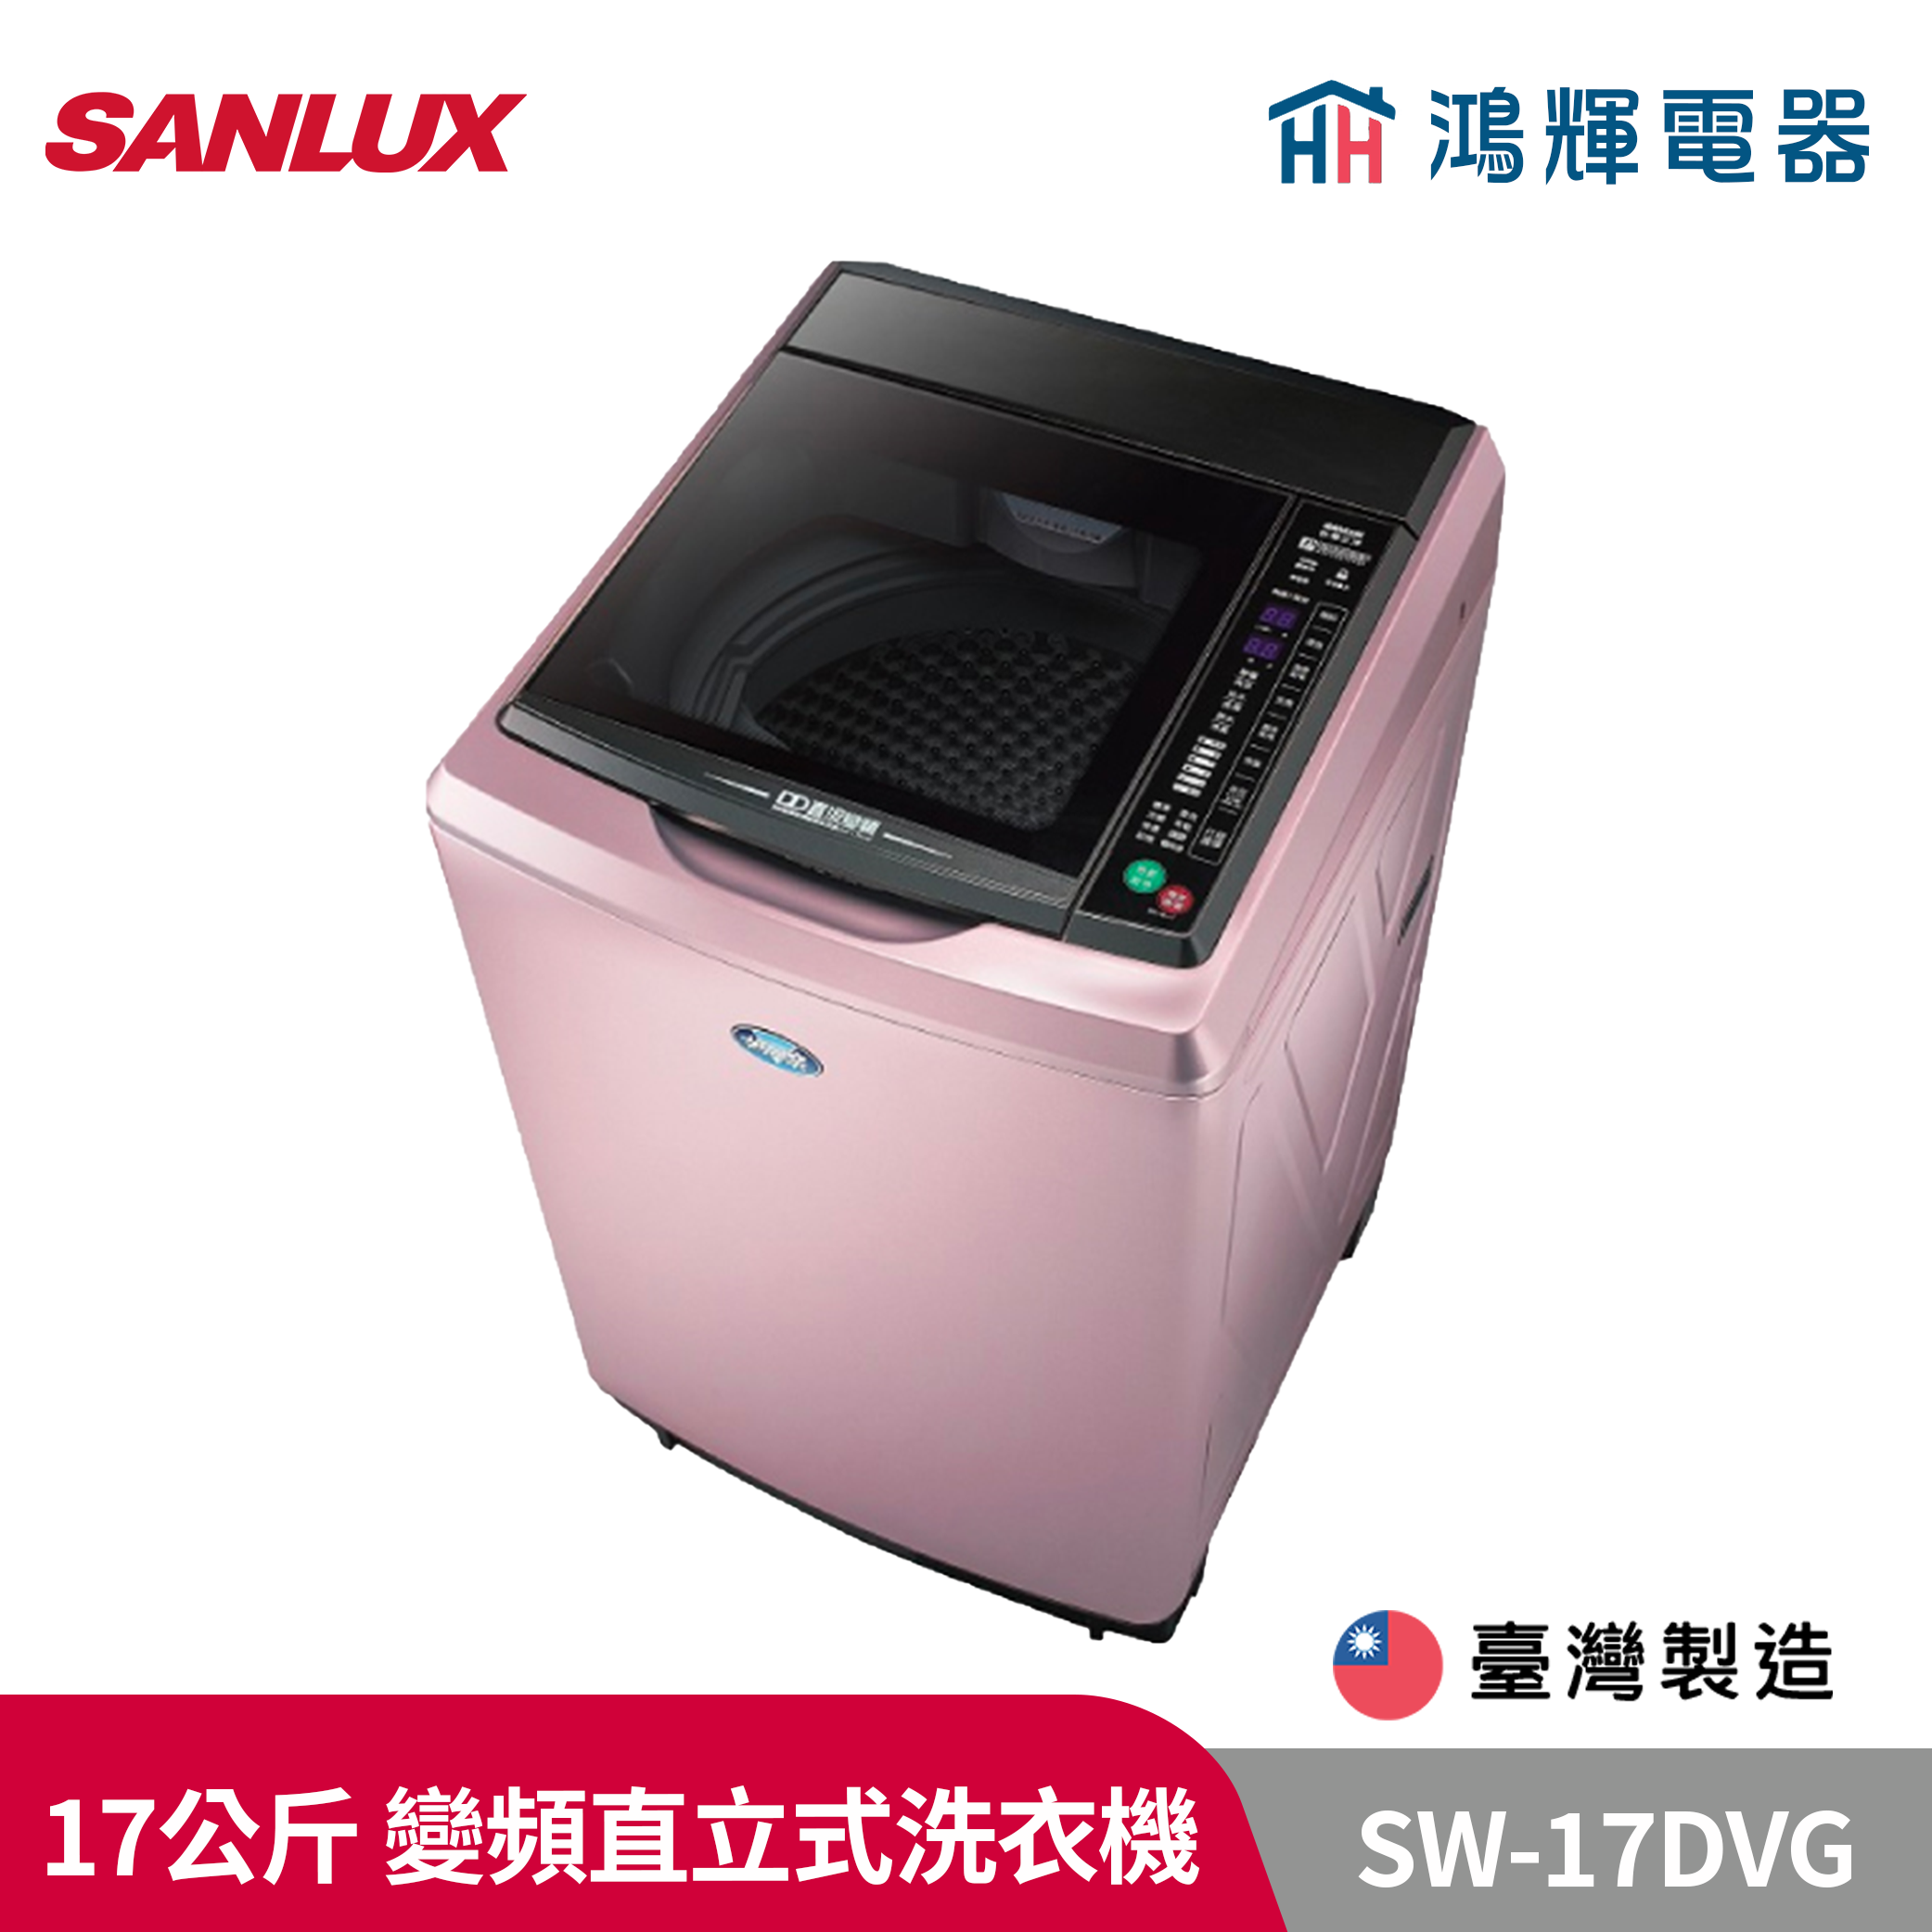 鴻輝電器 | SANLUX台灣三洋 SW-17DVG 17公斤 變頻直立式洗衣機